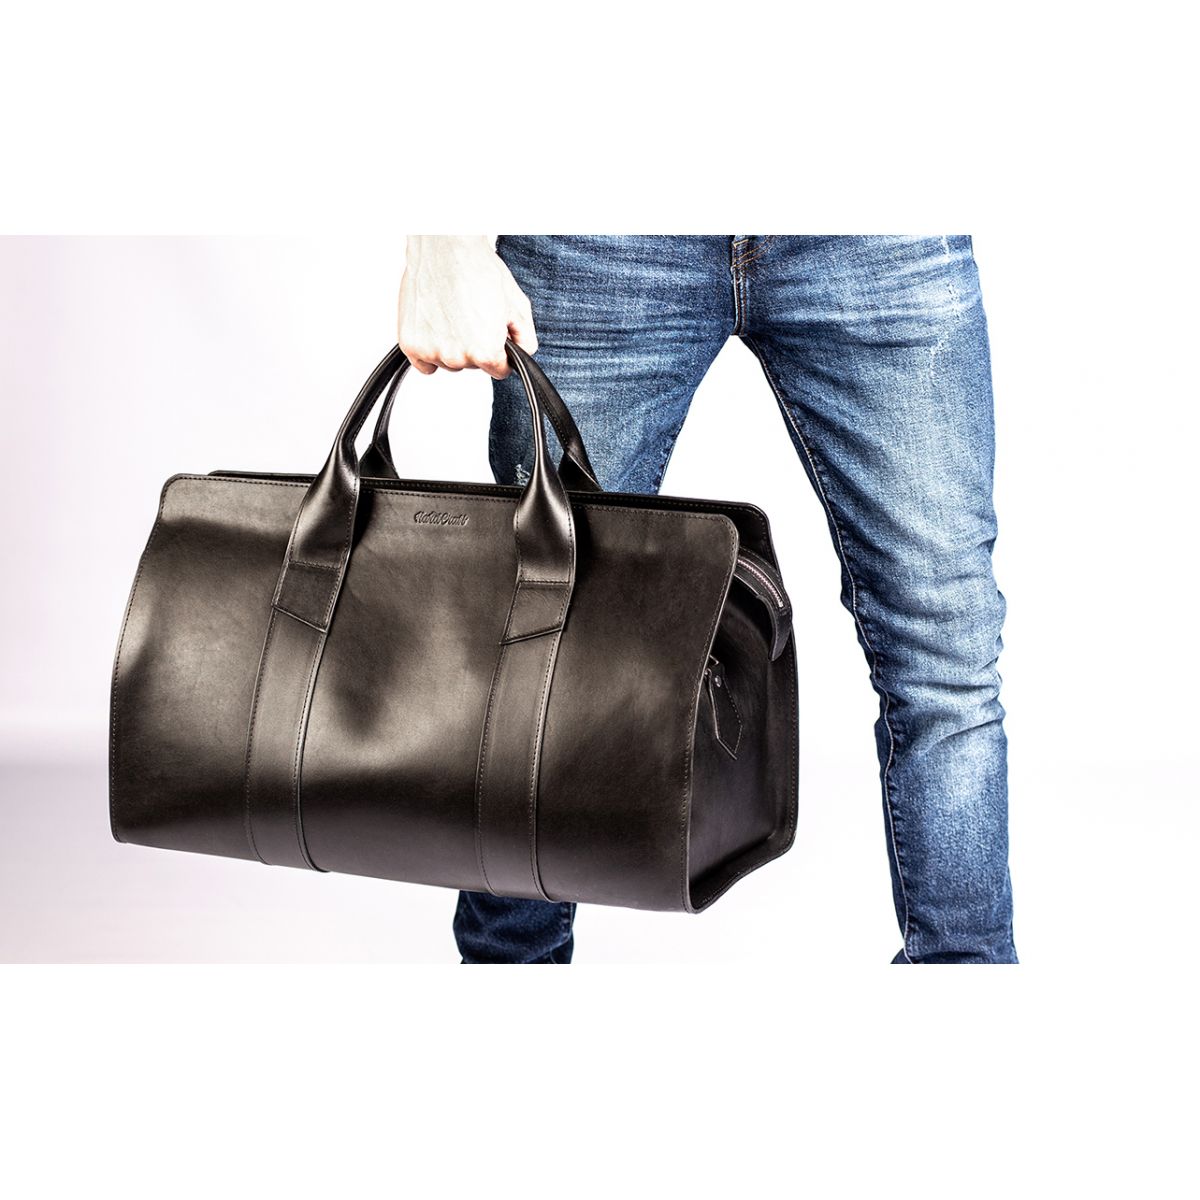 Мужской рюкзак с одной лямкой, который носится через одно плечо — популярная и востребованная модель сумки Как выбрать однолямочный кожаный или текстильный мини-рюкзак и с чем его носить Какие типы рюкзаков бывают